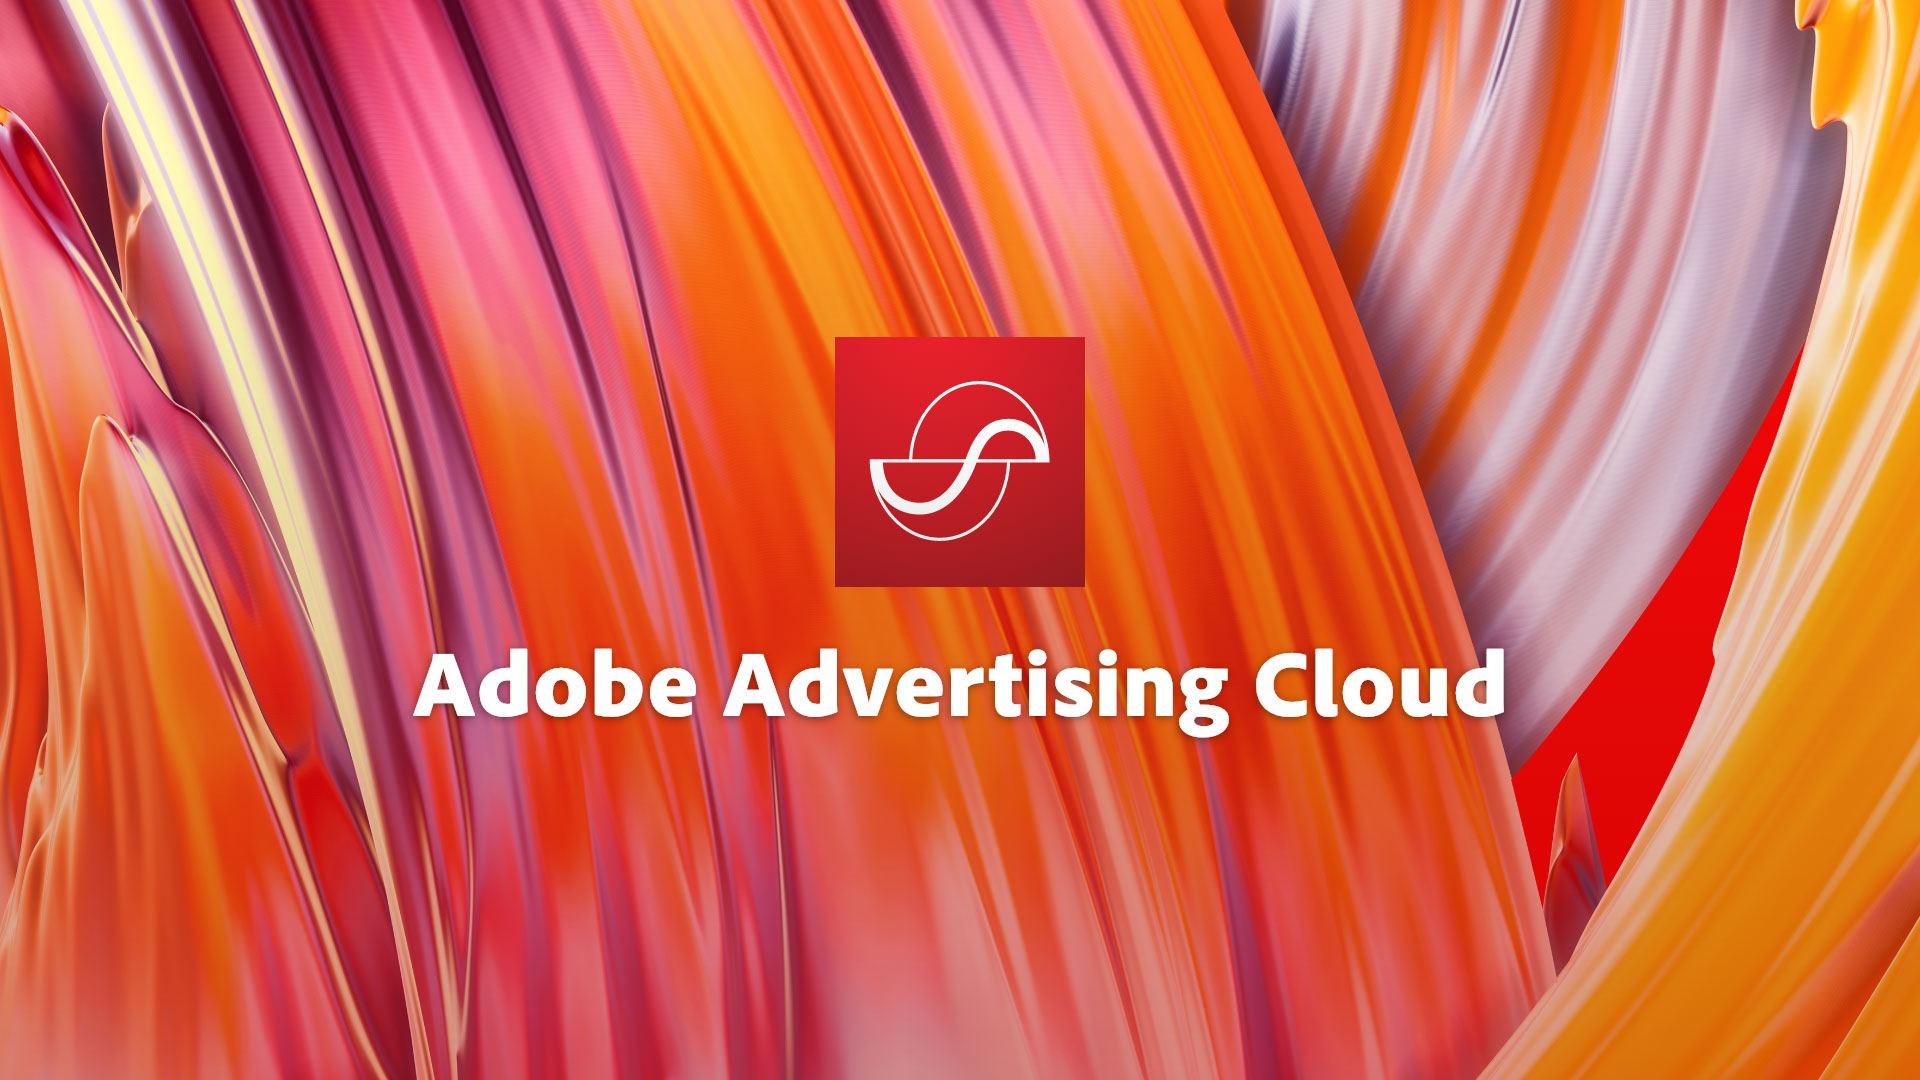 Adobe Ads Donutz Digital